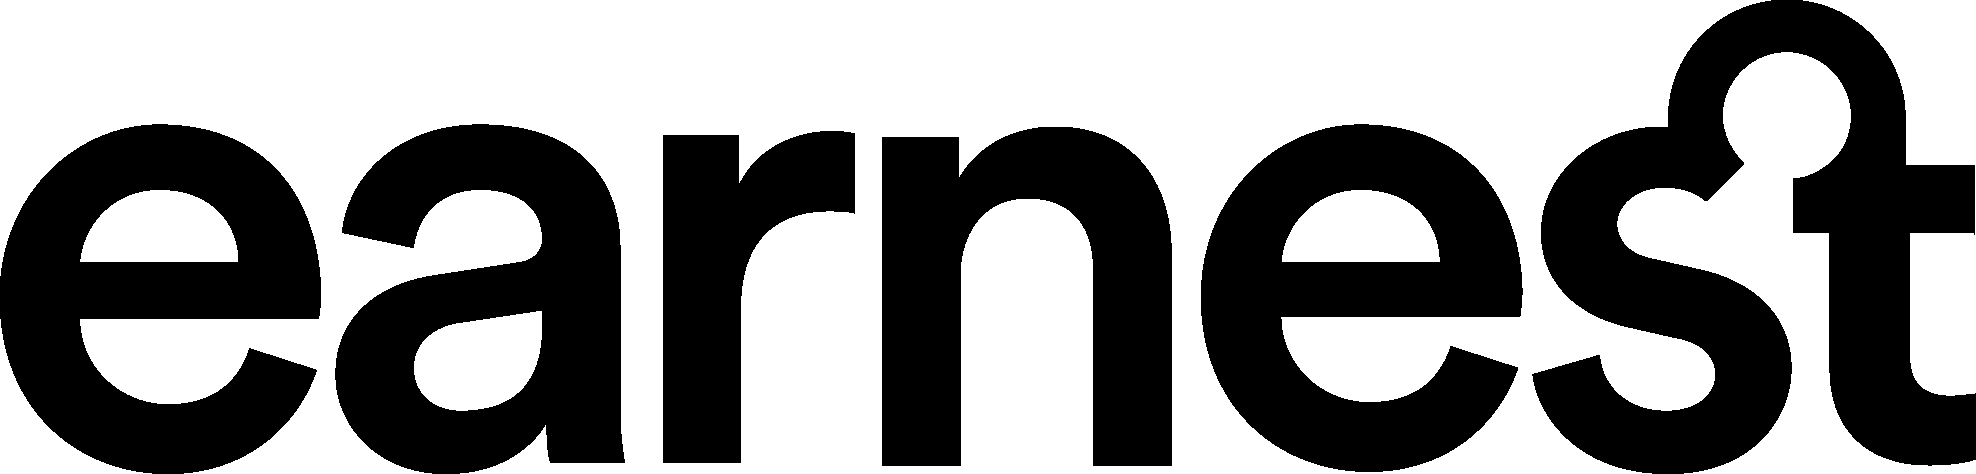 Earnest Logo png